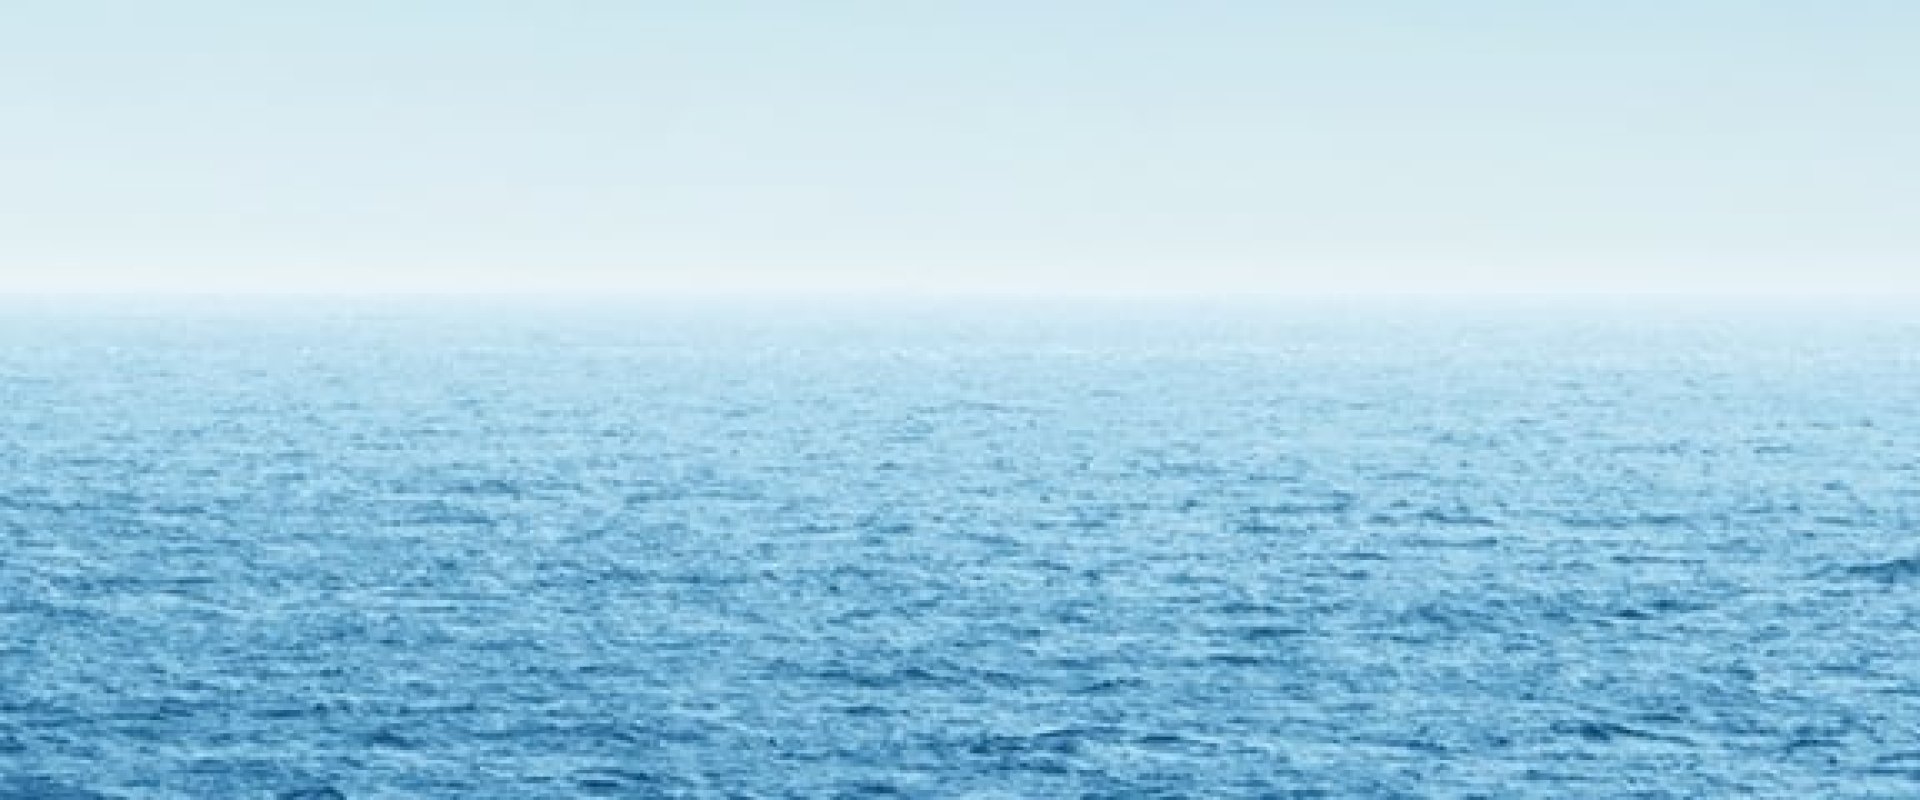 A blue ocean